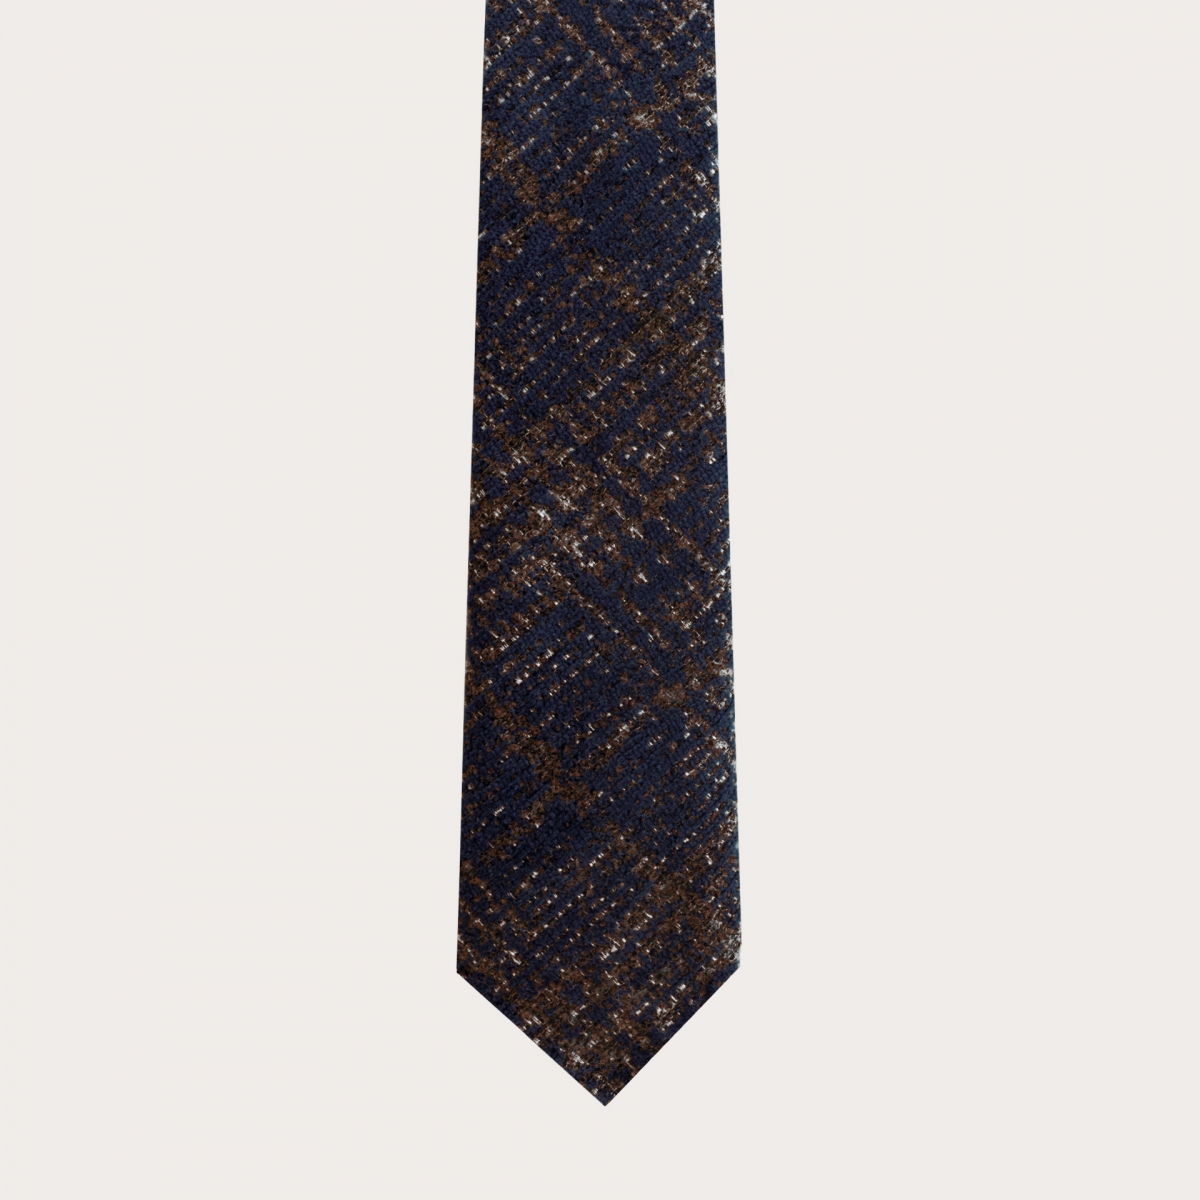 Corbata sin forro en lana y seda, tartán azul y marrón